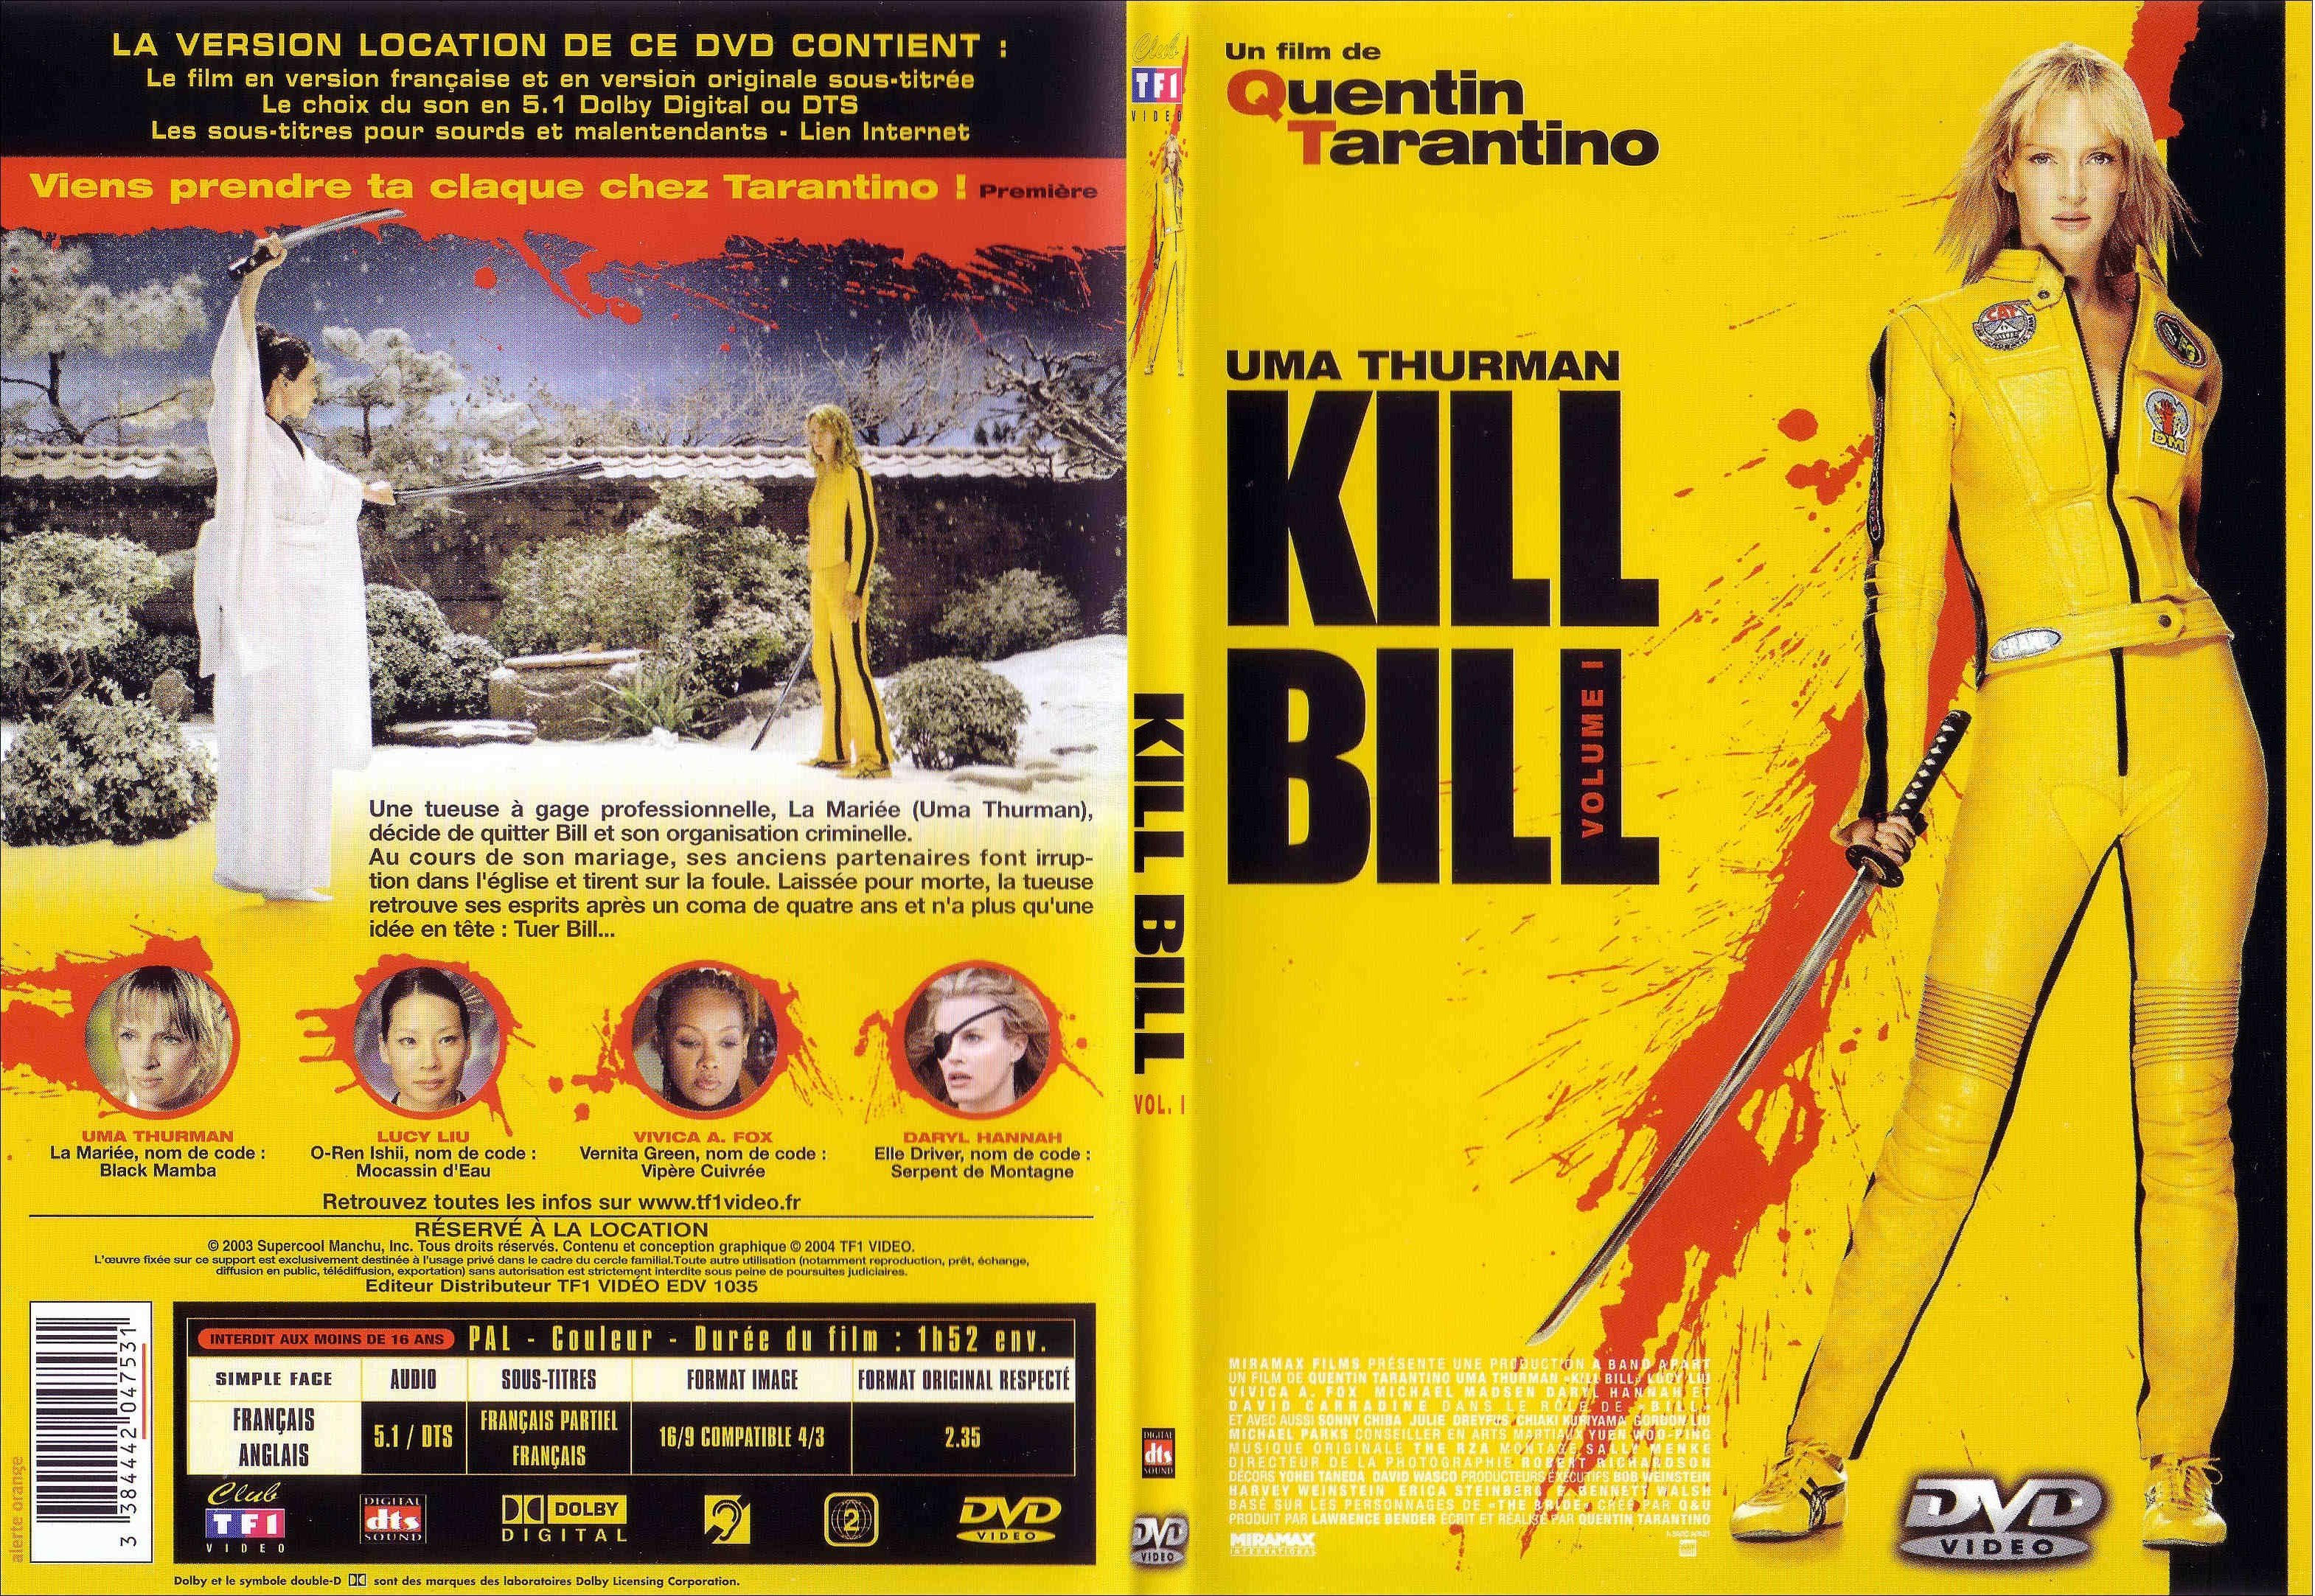 Jaquette DVD Kill bill vol 1 - SLIM